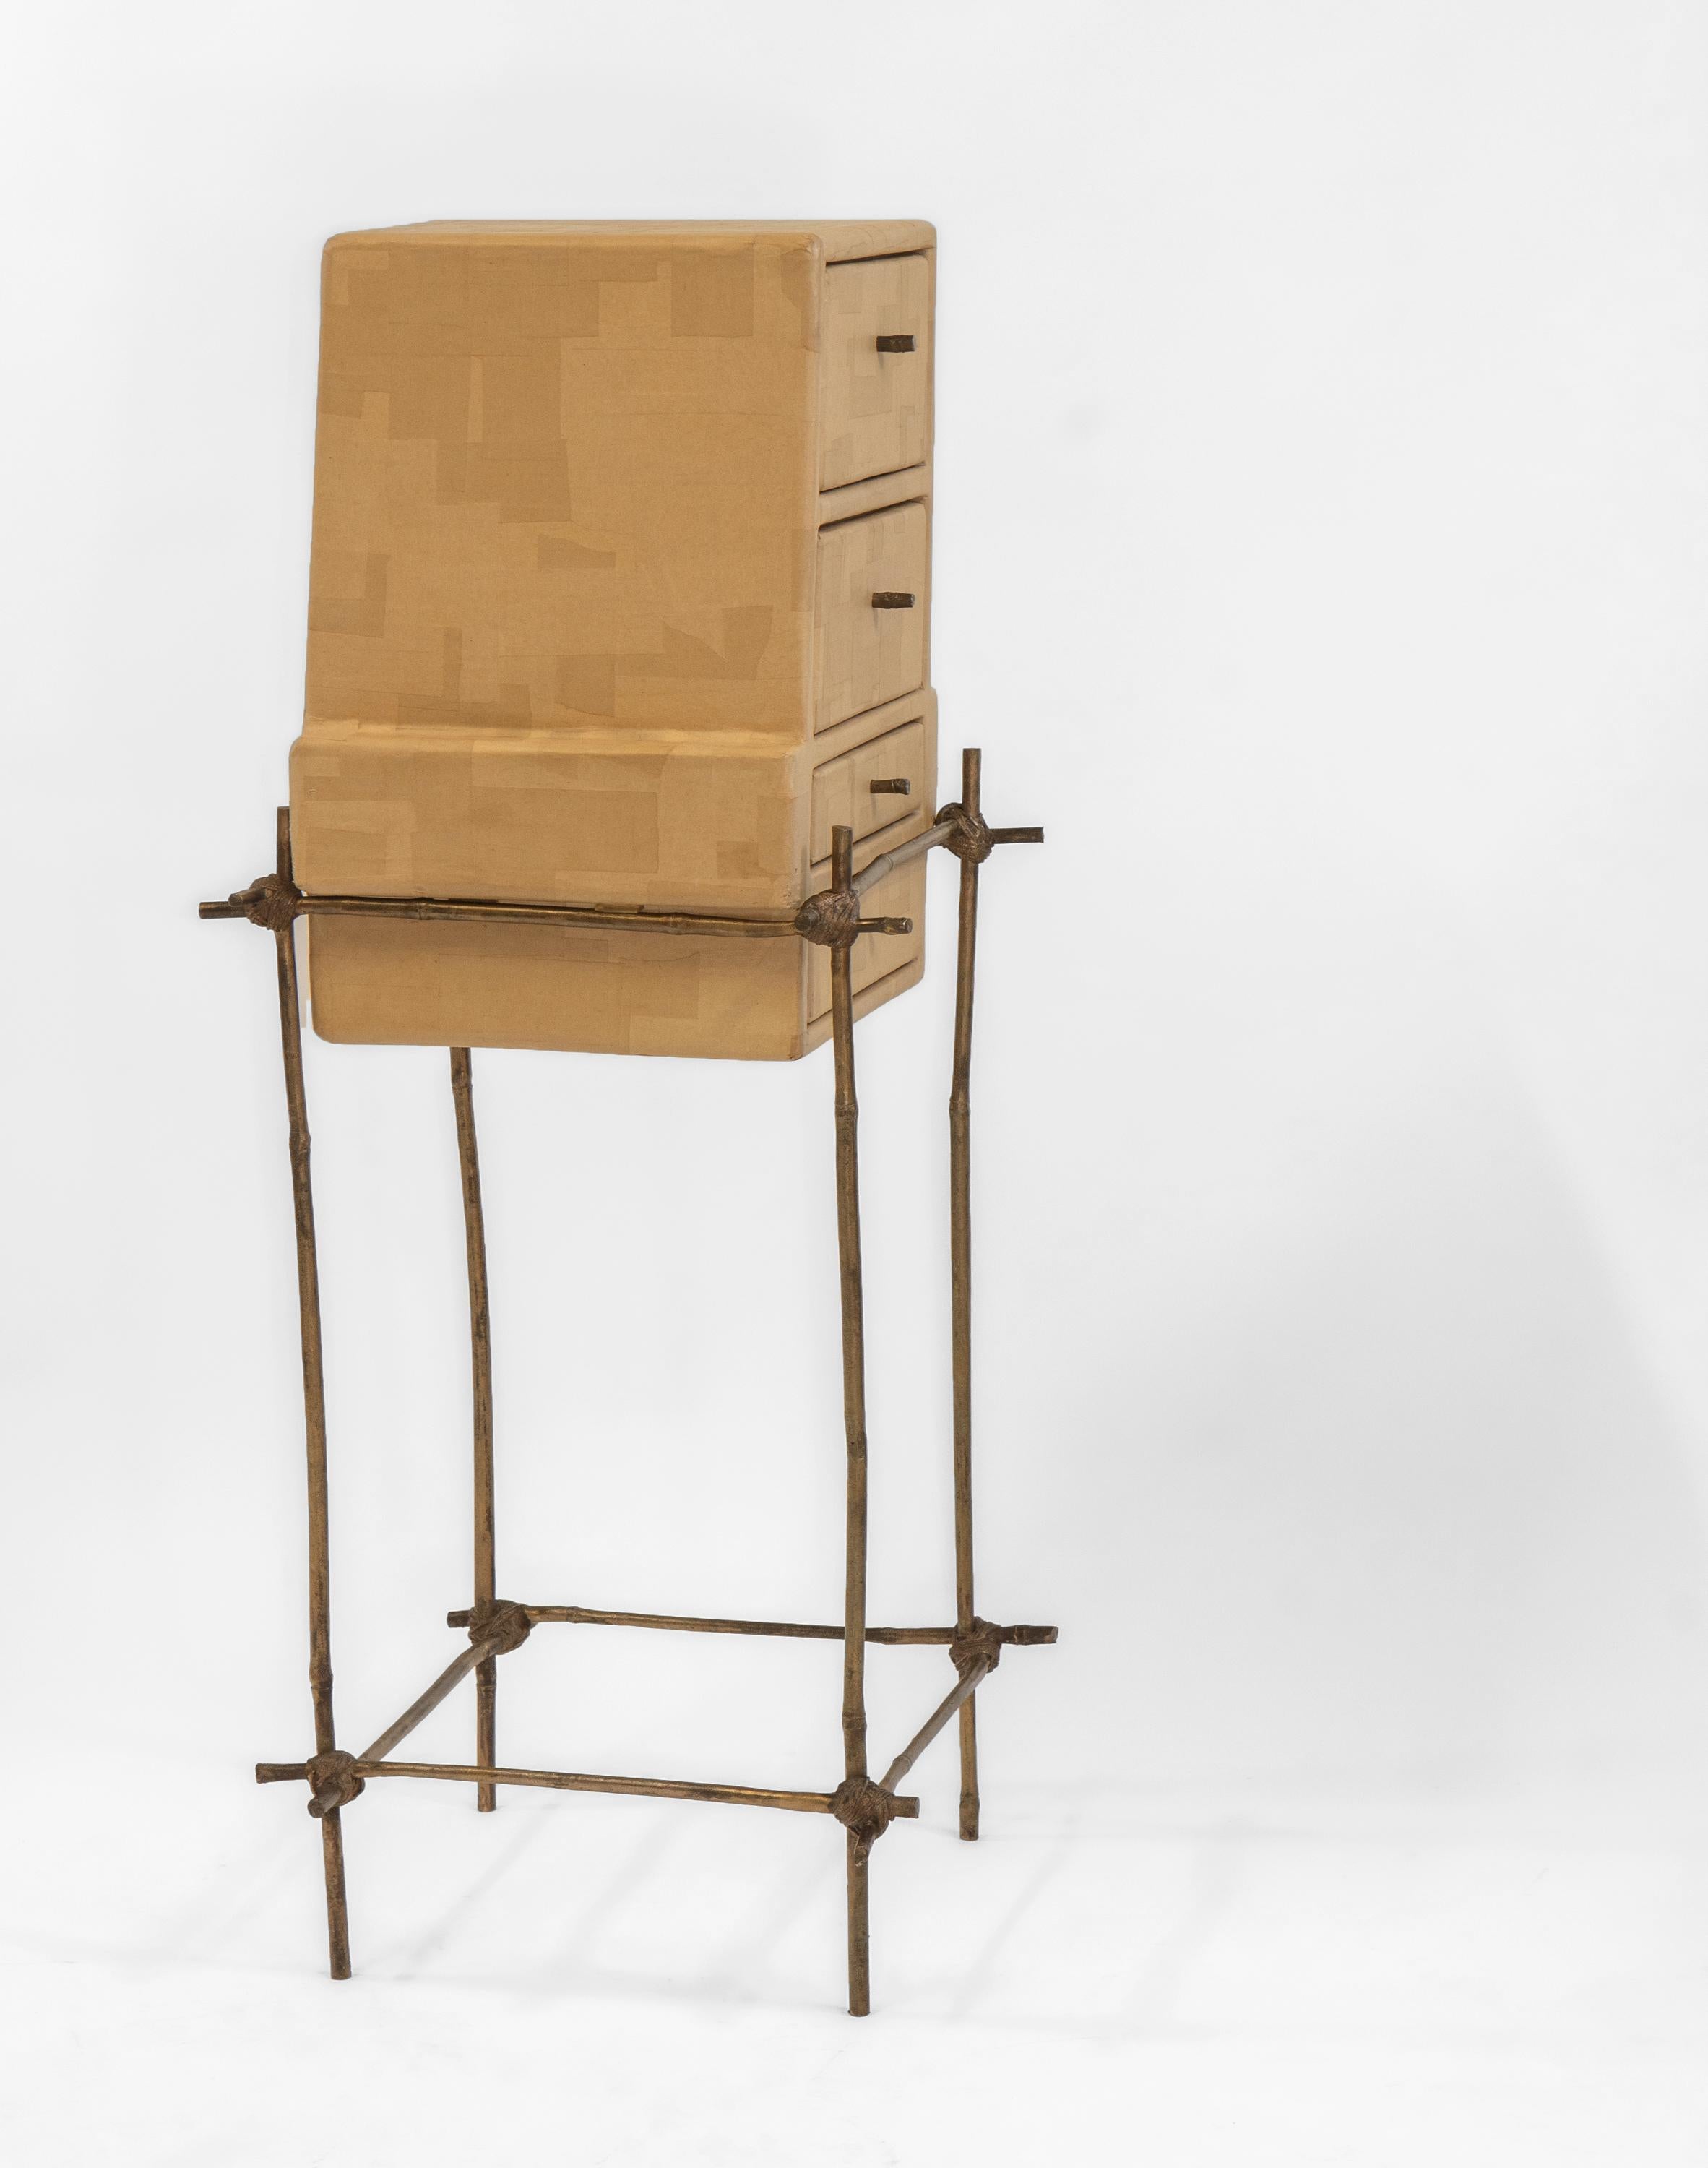 Britannique Studio Glithero Ad Hoc Cabinet sur pied en bambou bronze doré Les French Series 1 en vente